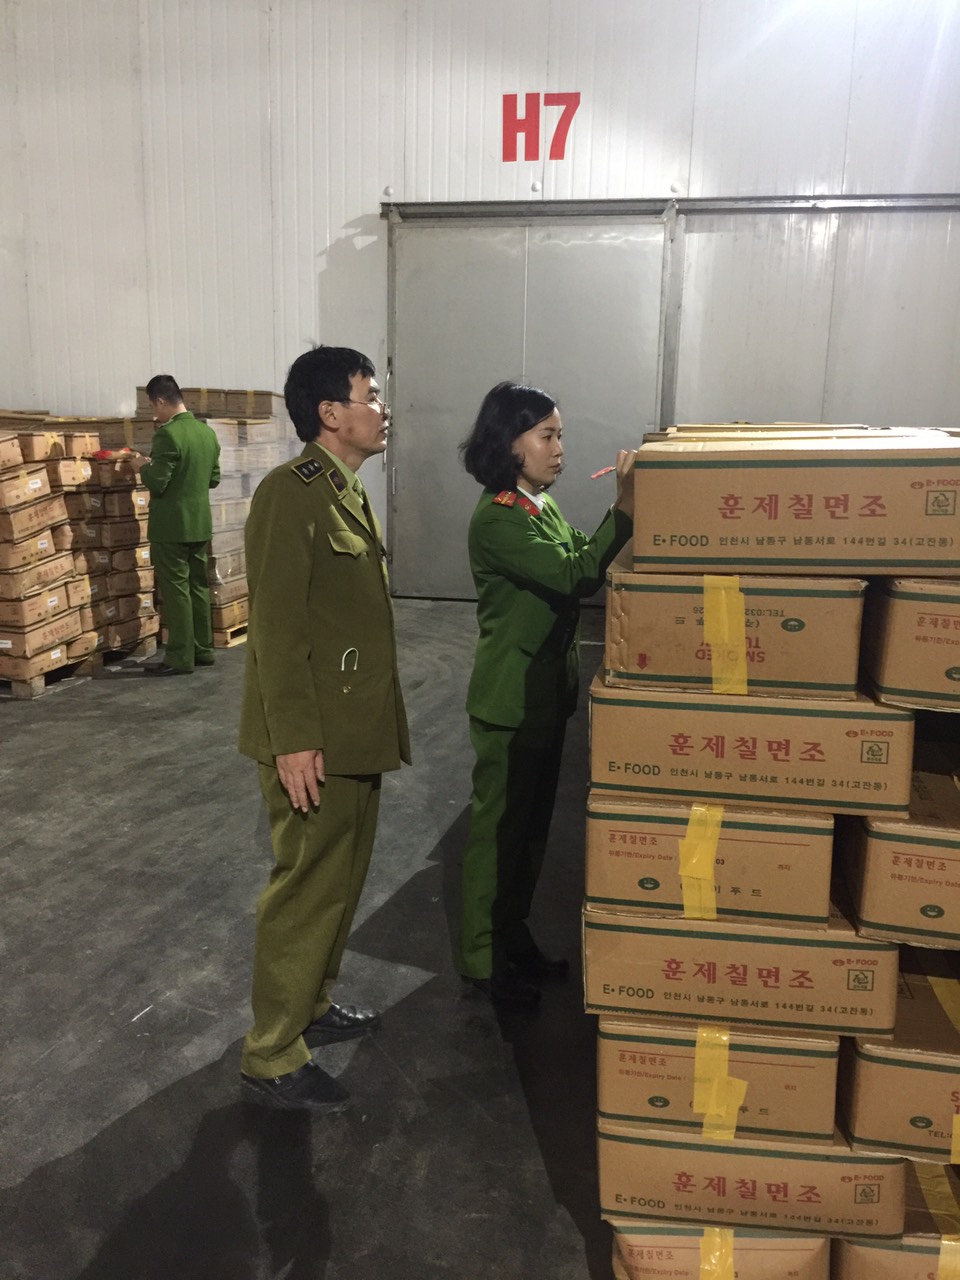  kho chứa 25 tấn đùi gà tây Hàn Quốc hết hạn sử dụng, chảy nước hôi thối tại KCN Quang Minh, Hà Nội